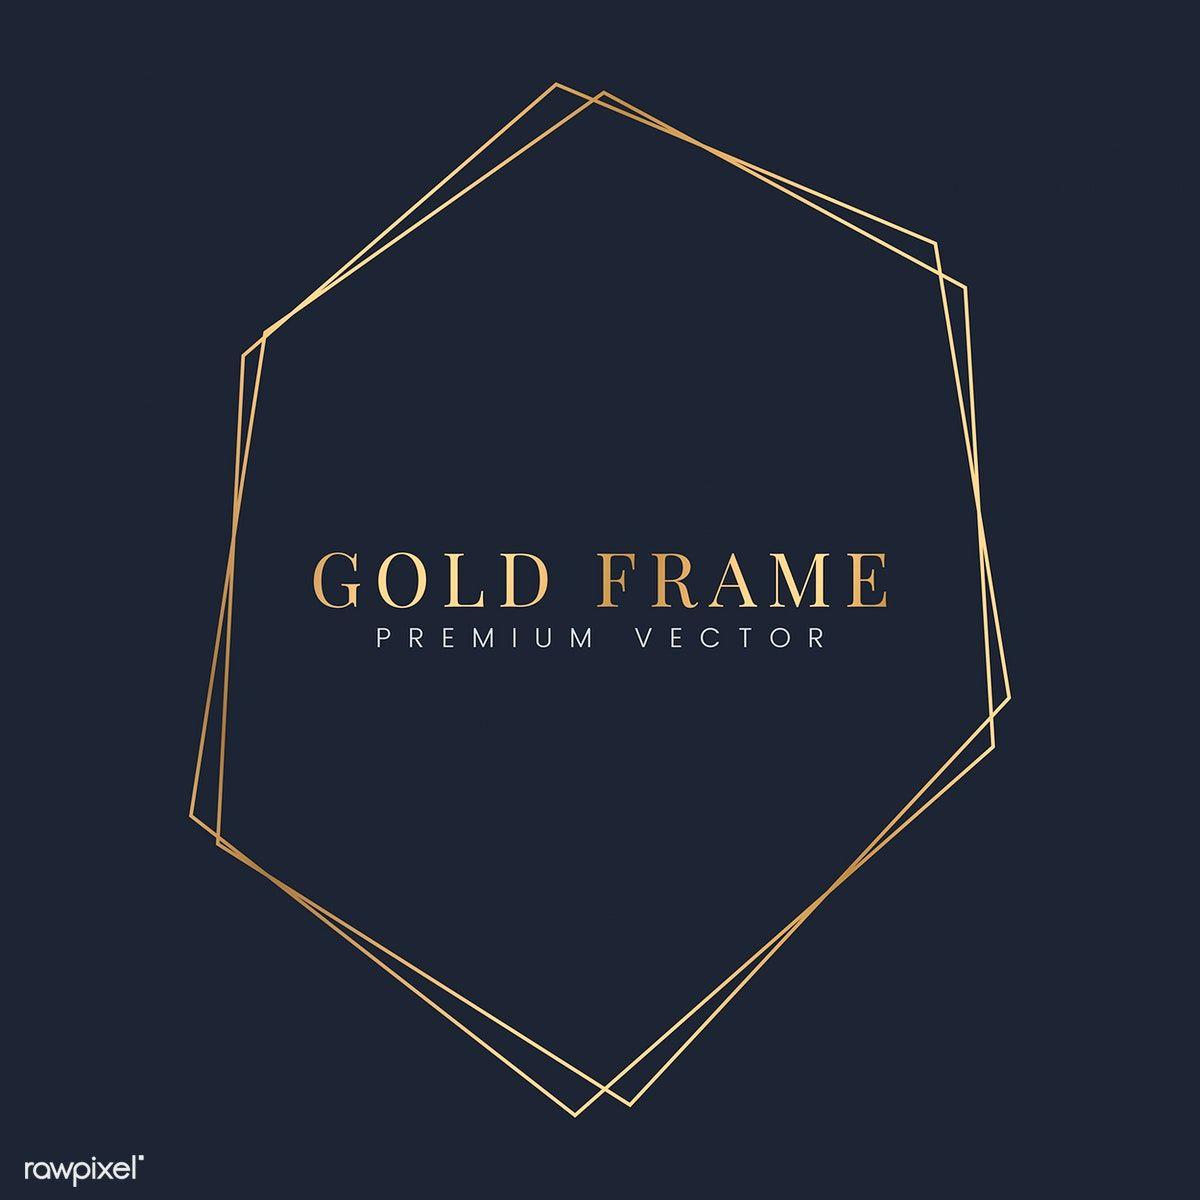 Hexagon Shaped Gold Auto Logo - Golden hexagon frame template vector | Free stock vector - 494551